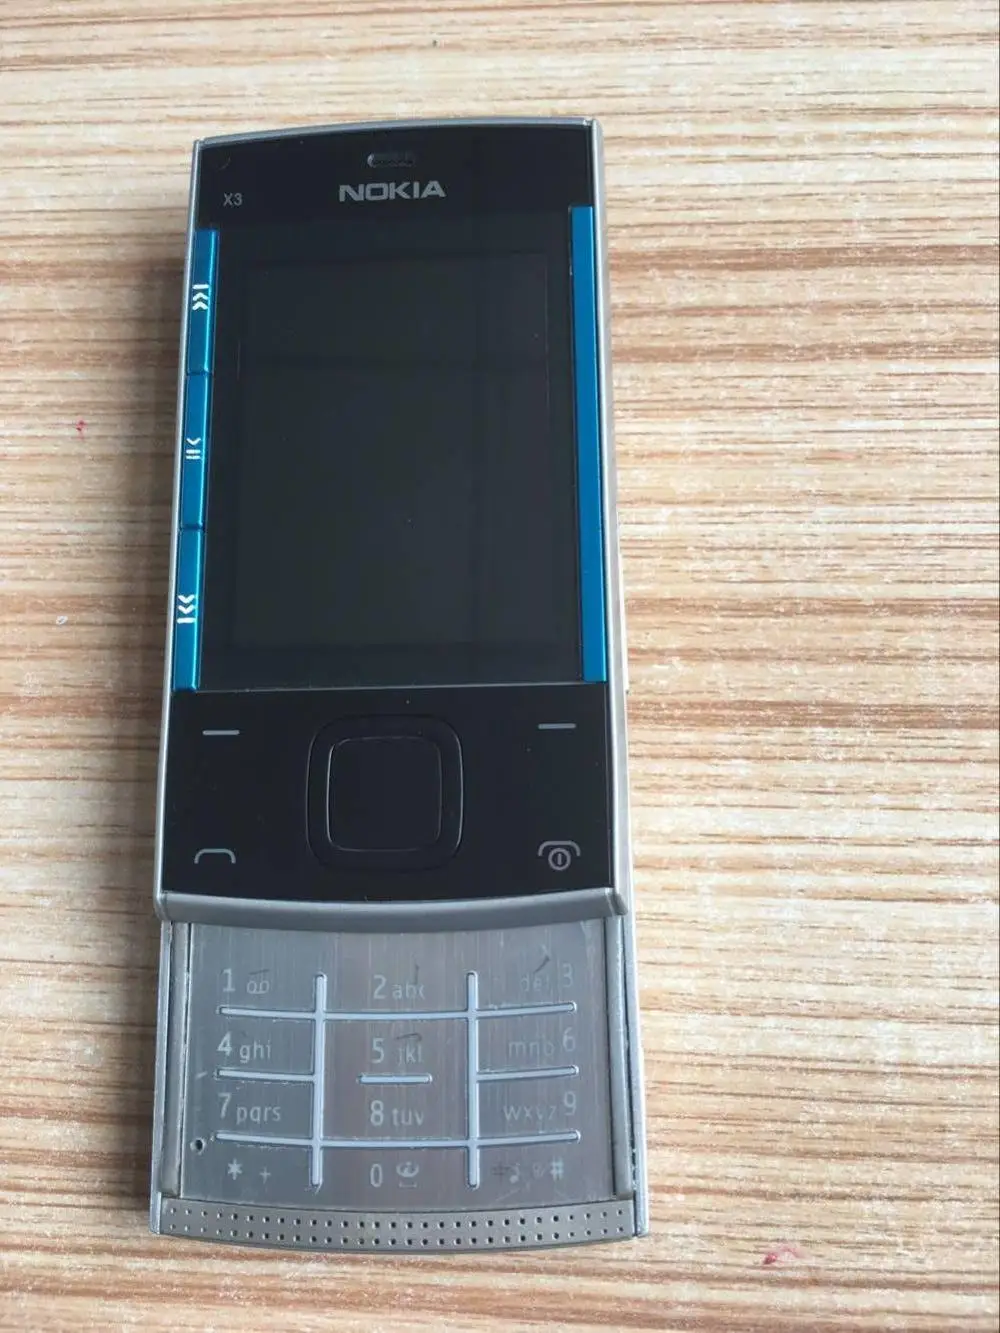 X3 Nokia X3-00 с поддержкой русской клавиатуры 2,2 МП 860 дюйма мАч Bluetooth слайдер Восстановленный разблокированный мобильный телефон - Цвет: Синий